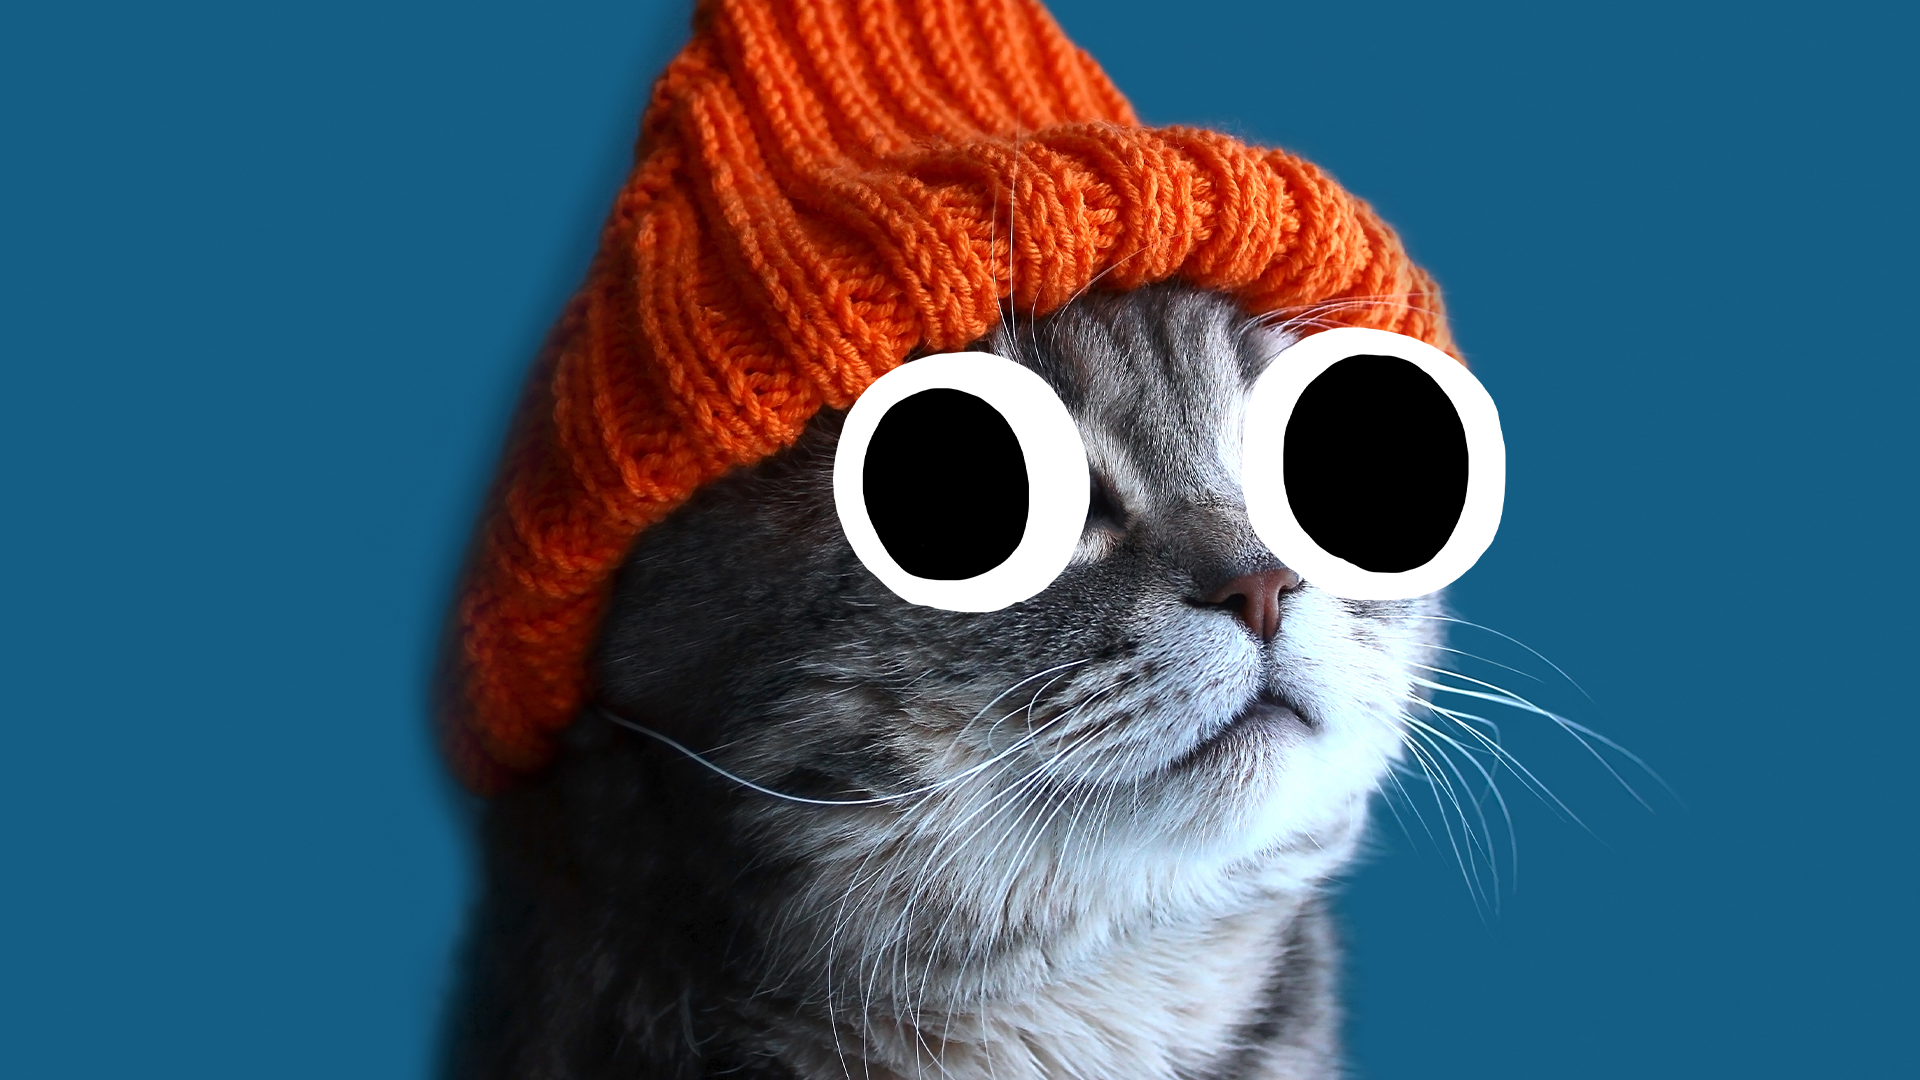 A cat in a hat